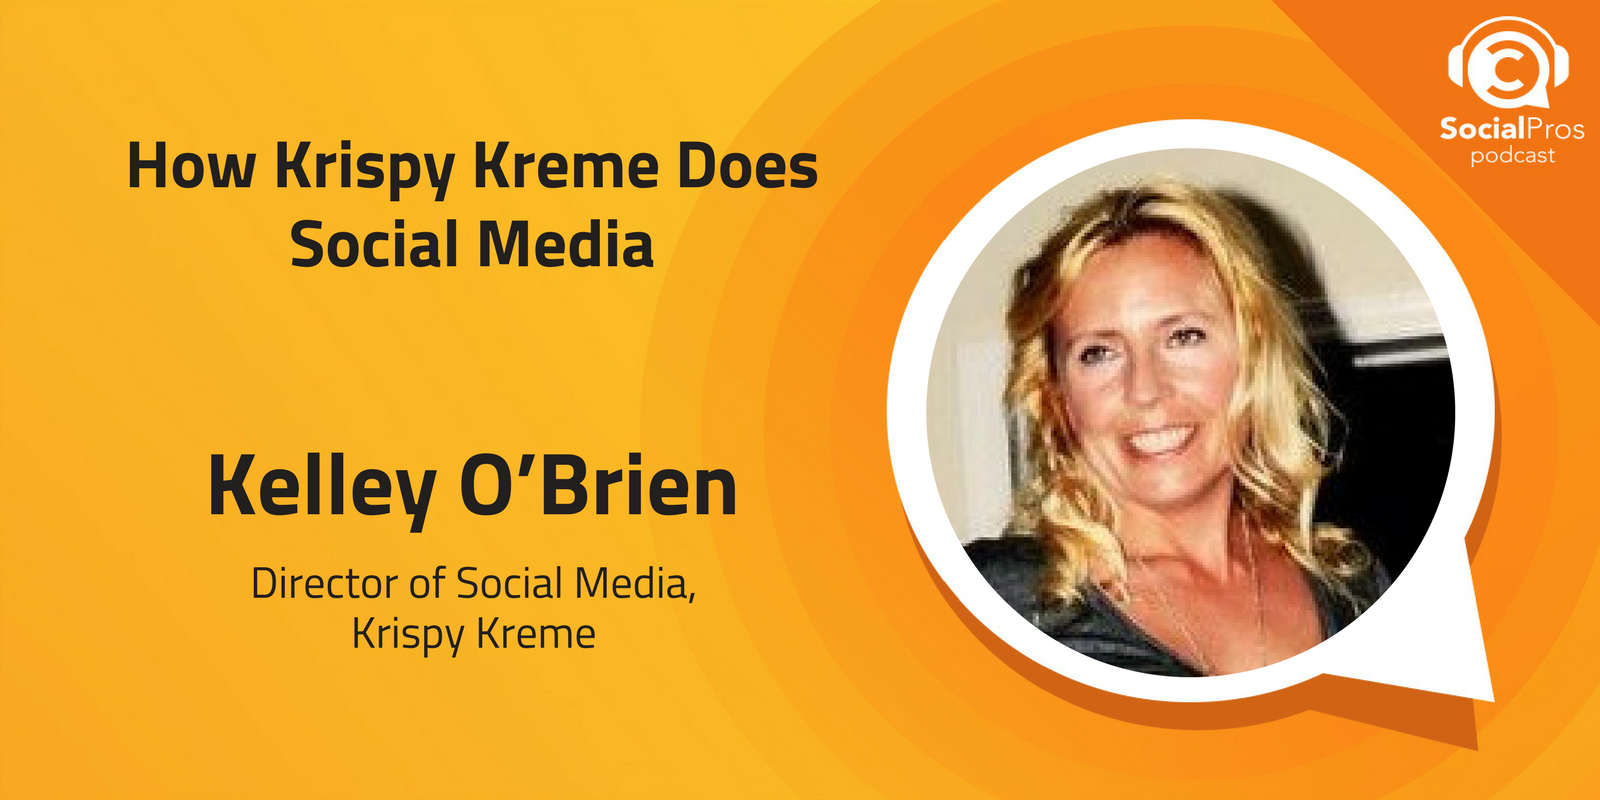 How Krispy Kreme does social media